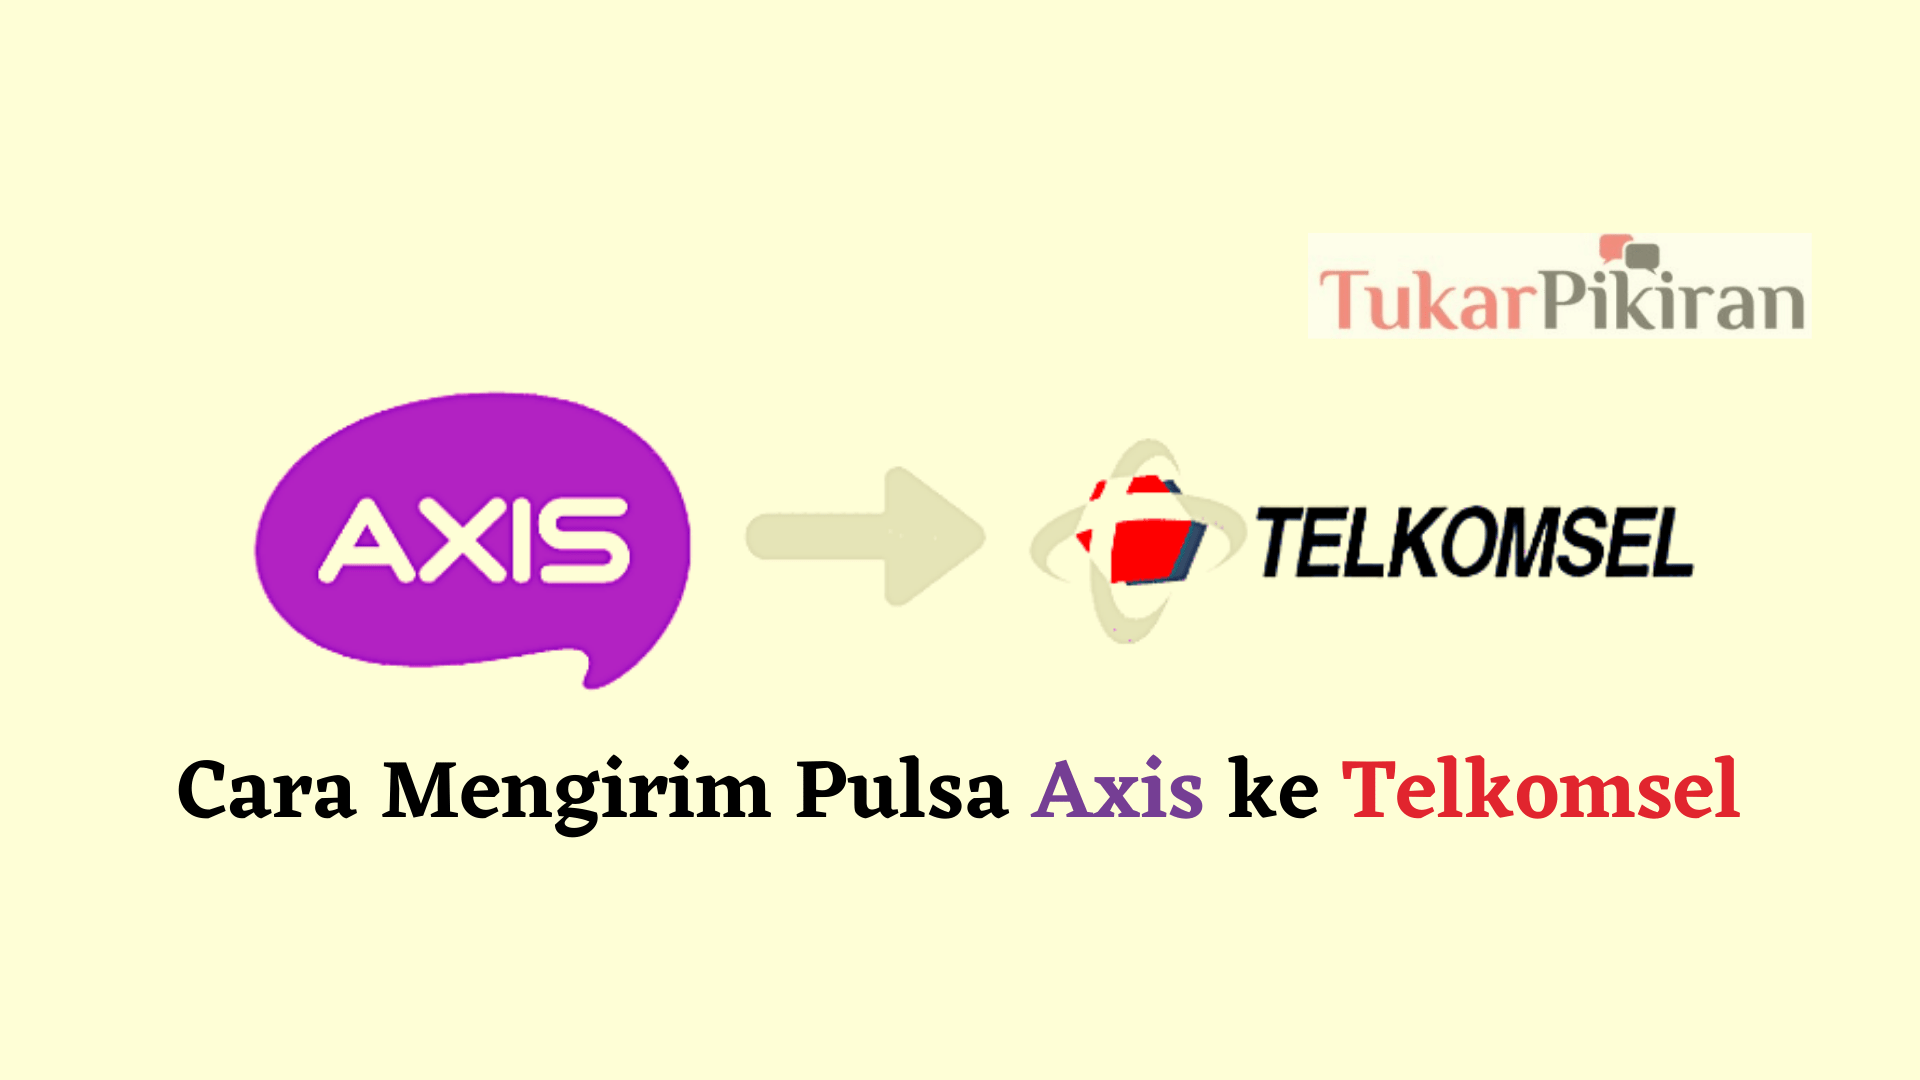 Cara Mengirim Pulsa Axis ke Telkomsel Paling Mudah